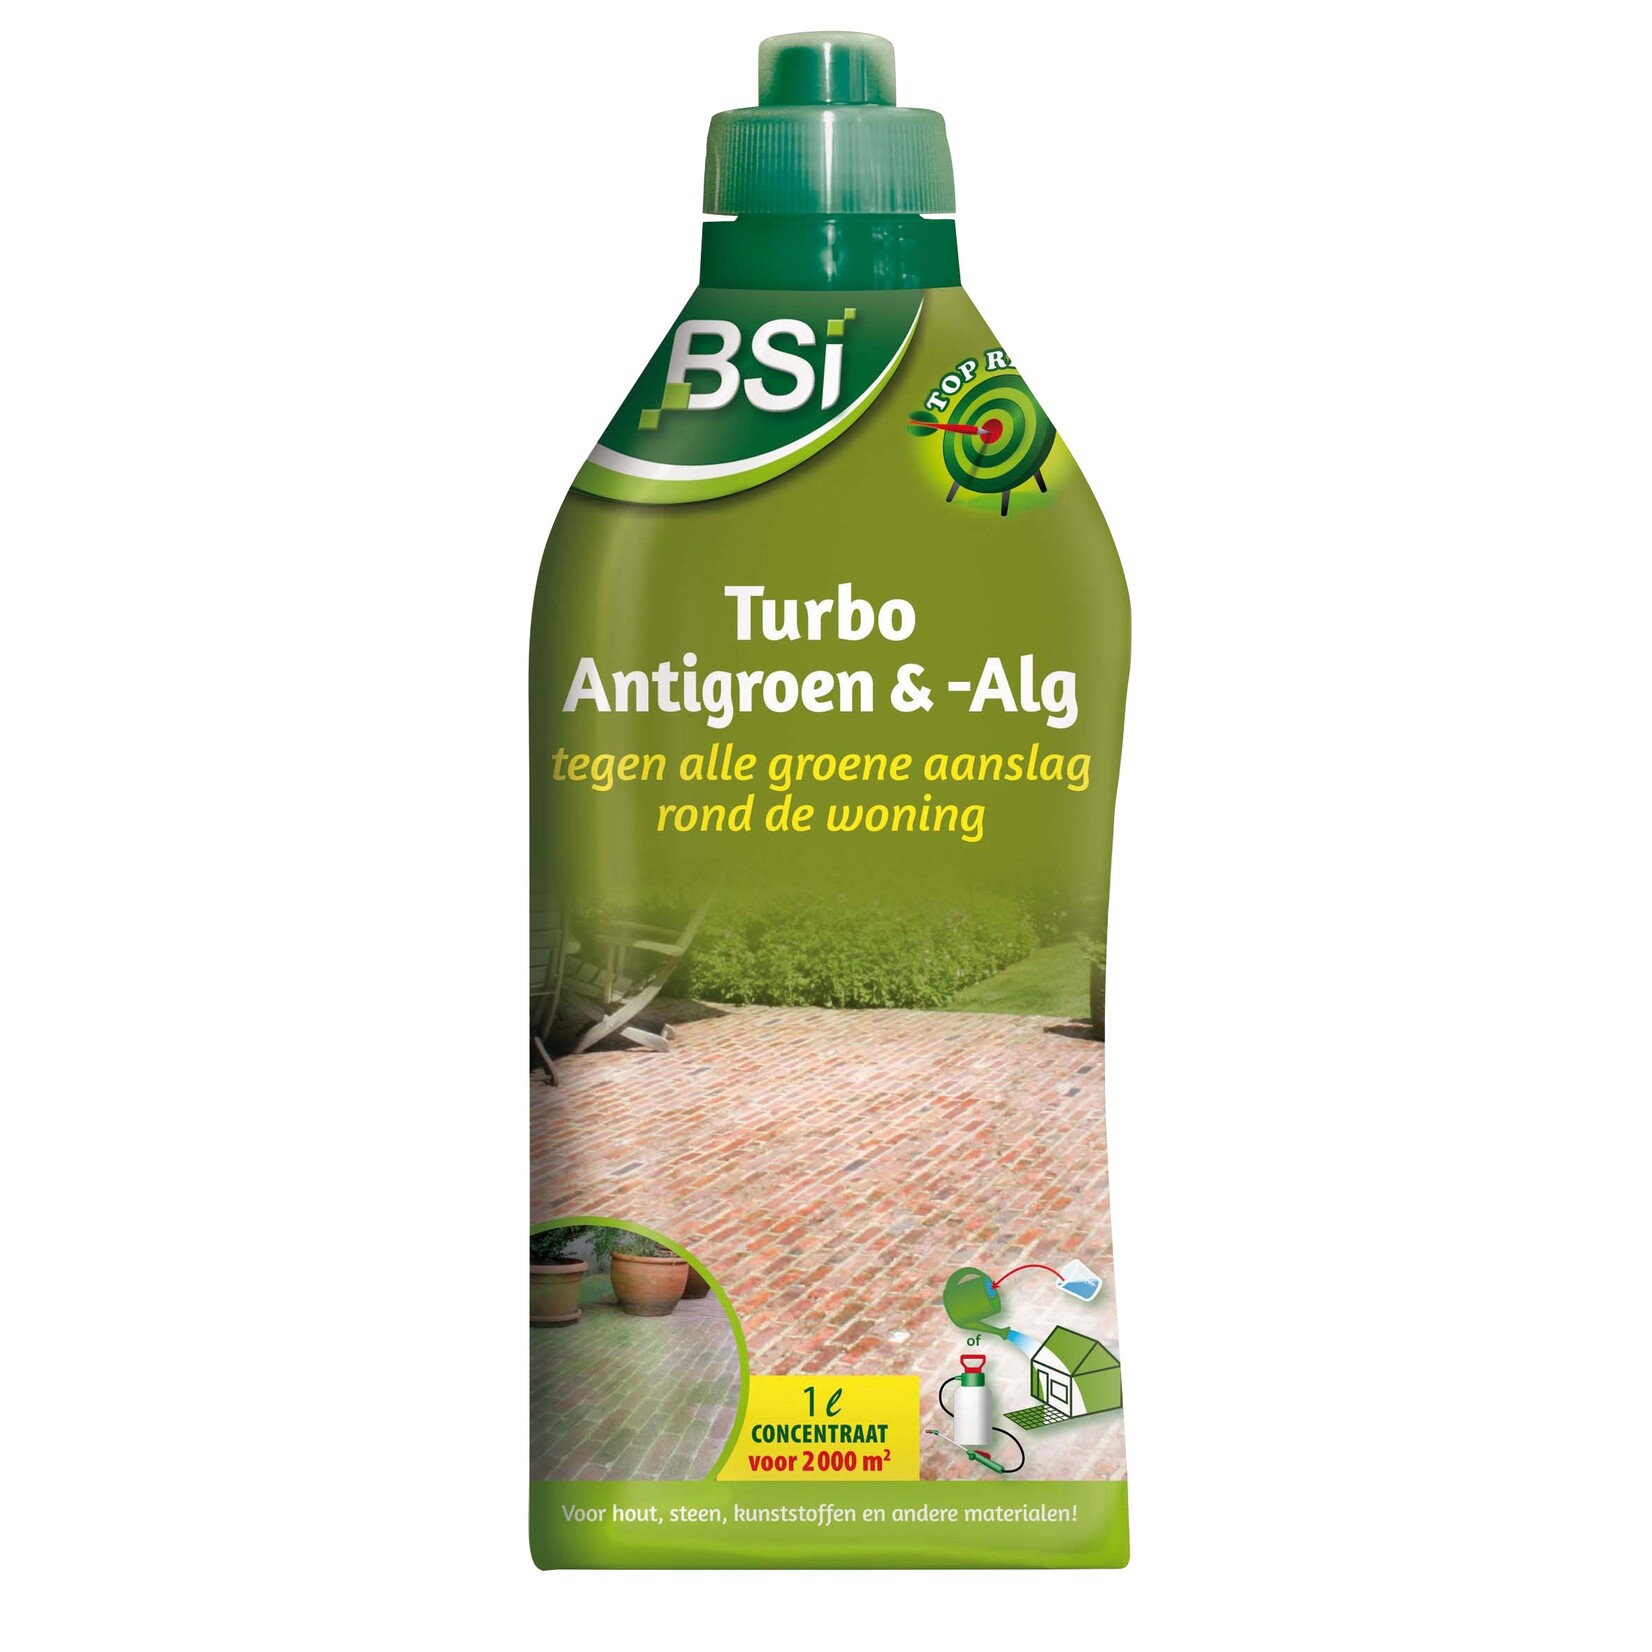 BSi Turbo Anti Groen & Alg 1 Liter (Concentraat)